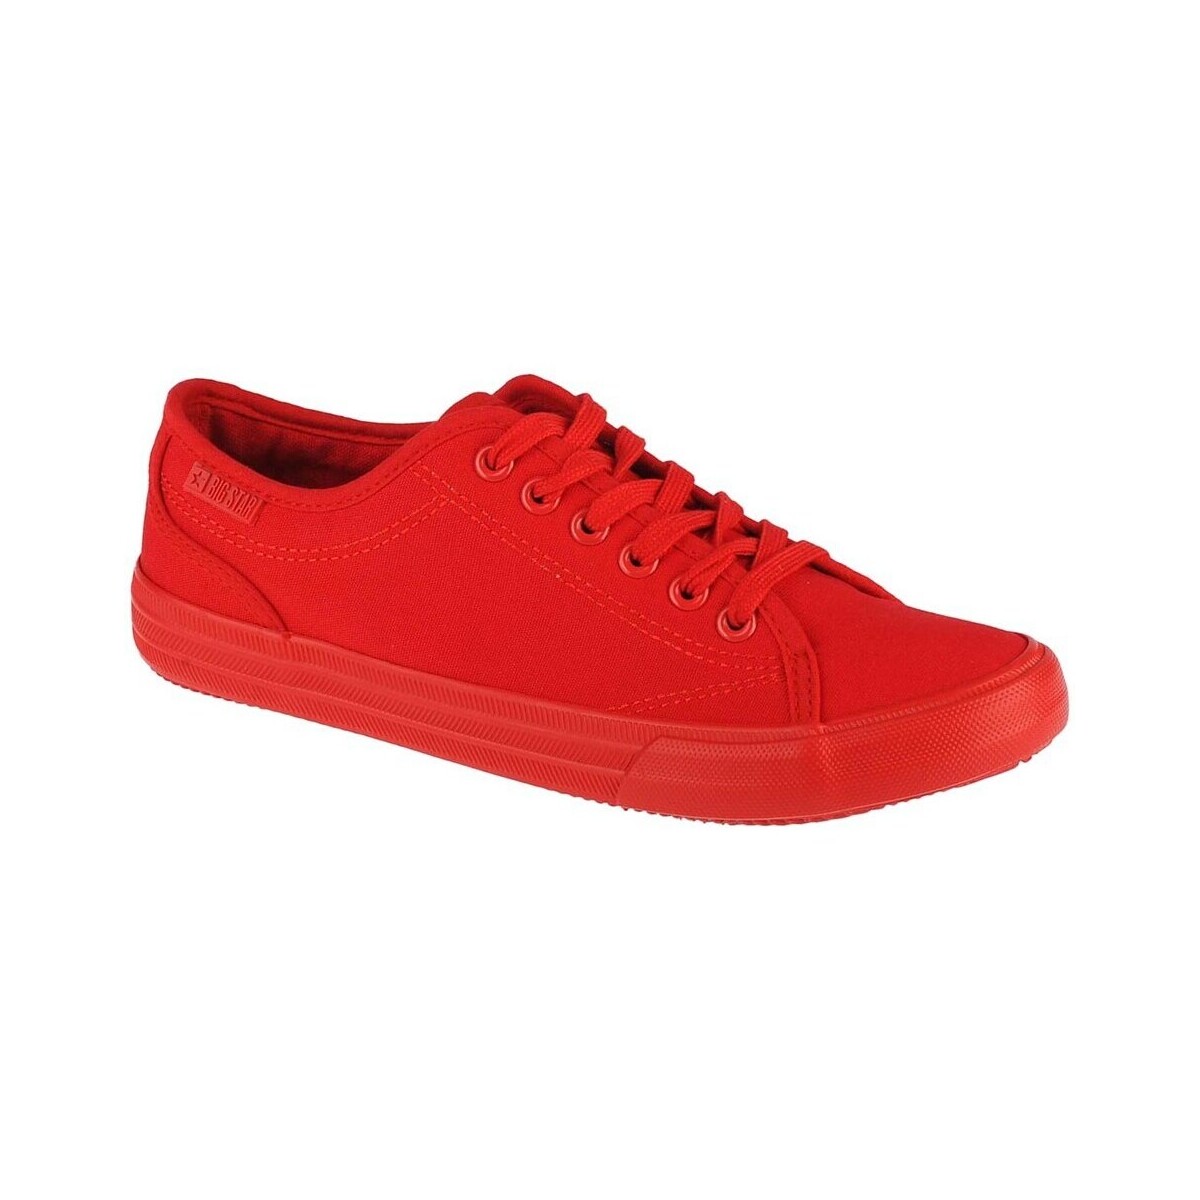 Sapatos Mulher Sapatilhas Big Star JJ274068 Vermelho